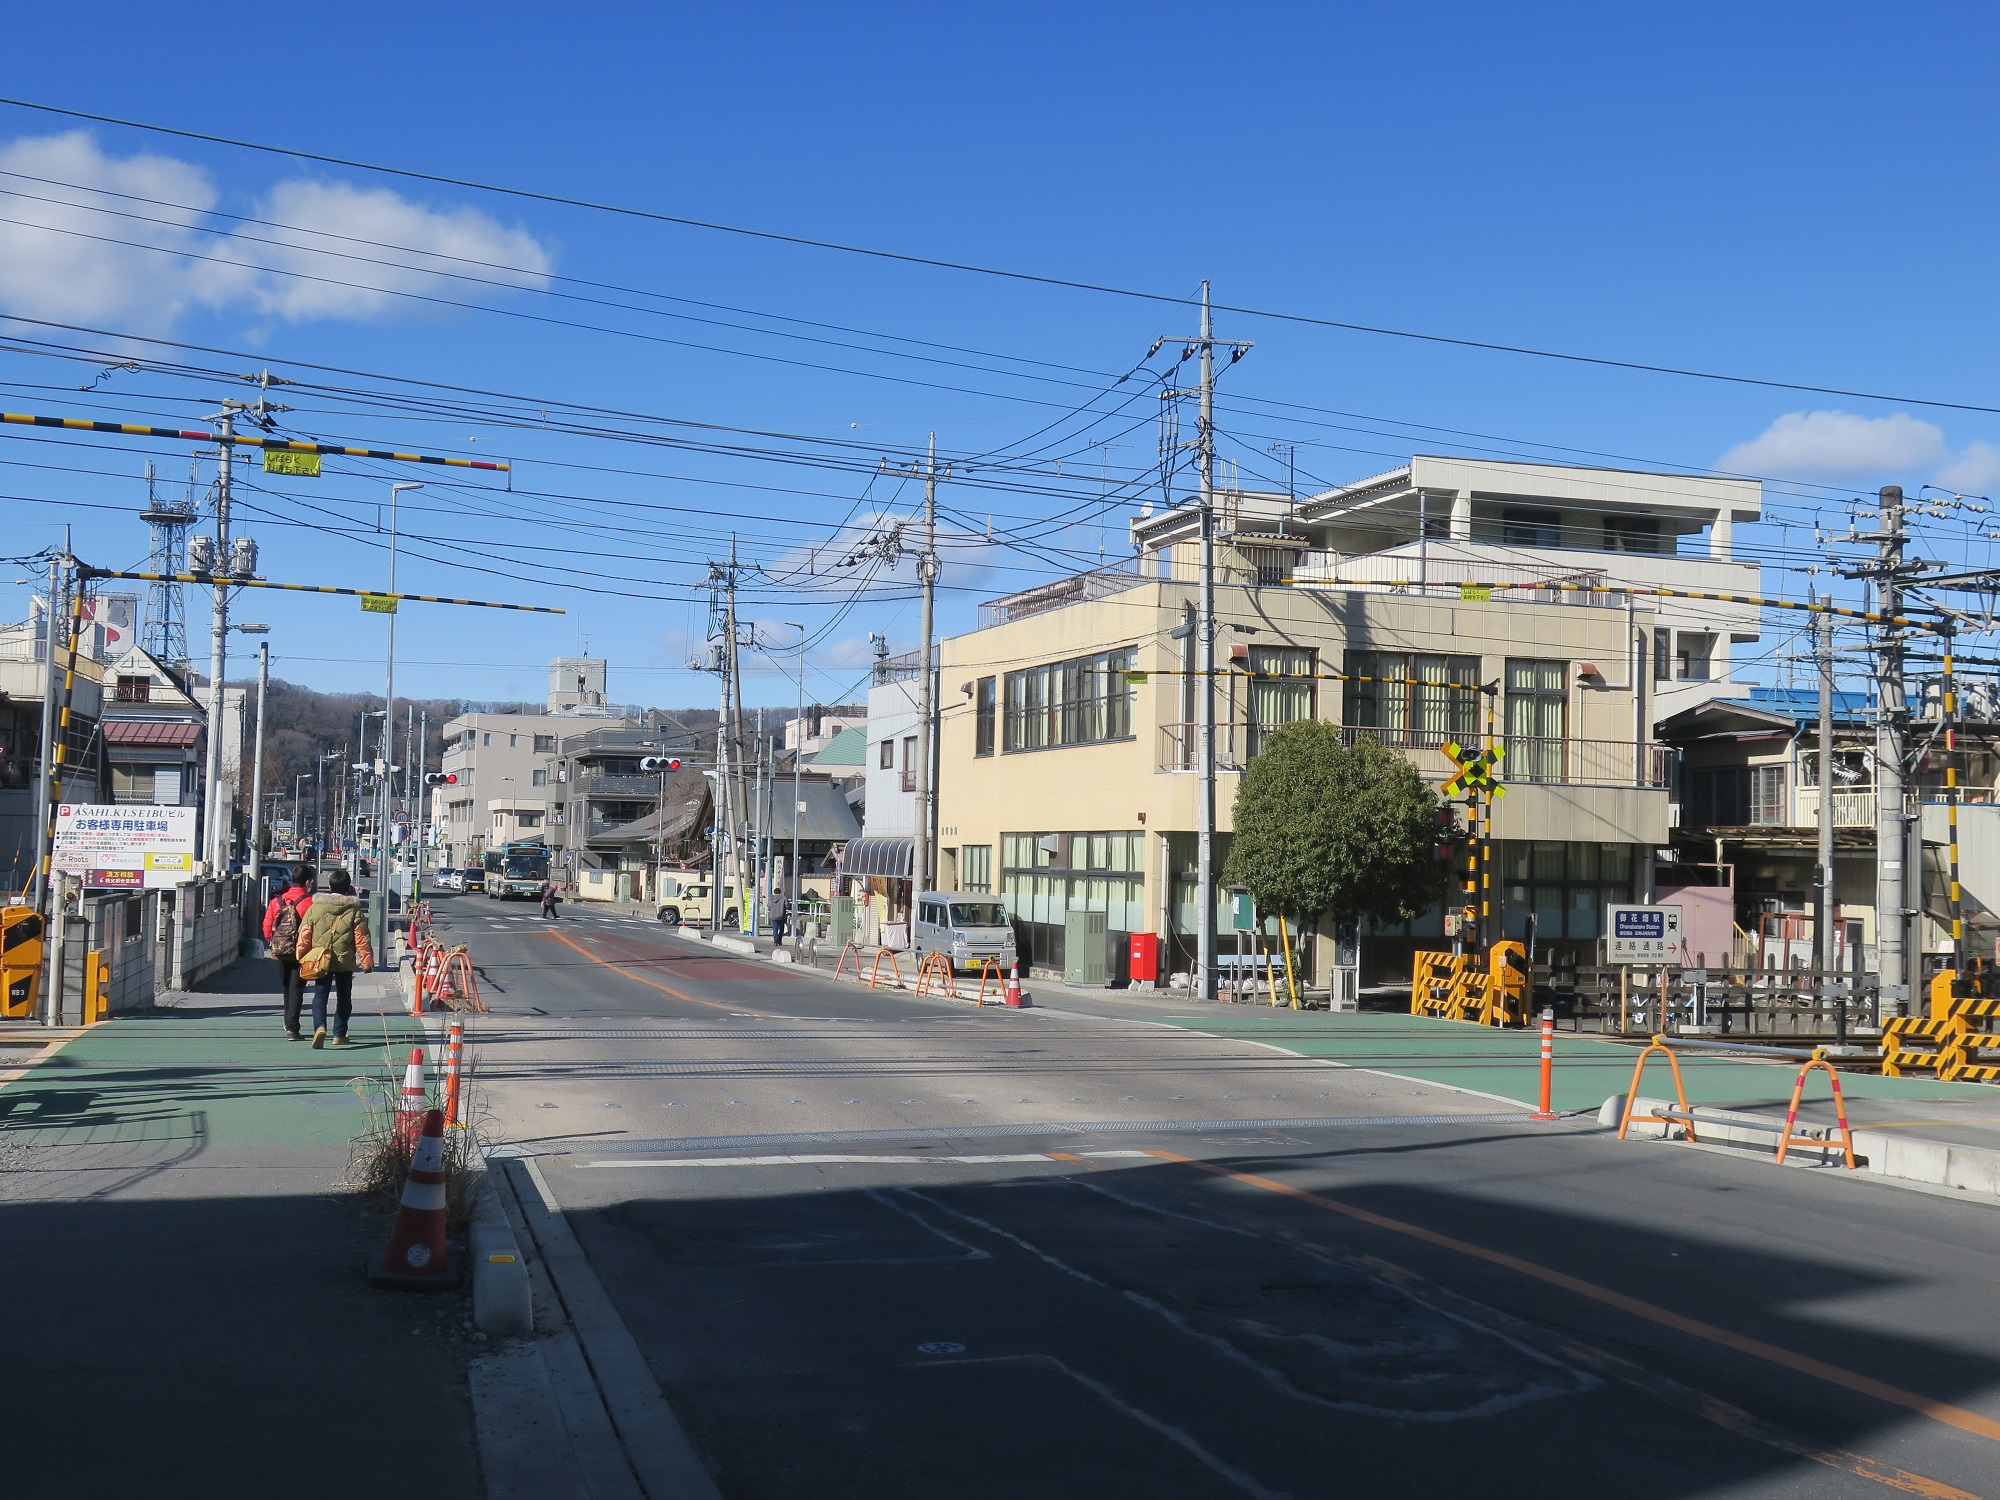 秩父鉄道線 御花畑駅 駅のすぐ近くにある踏切 御花畑駅へはここを右折します